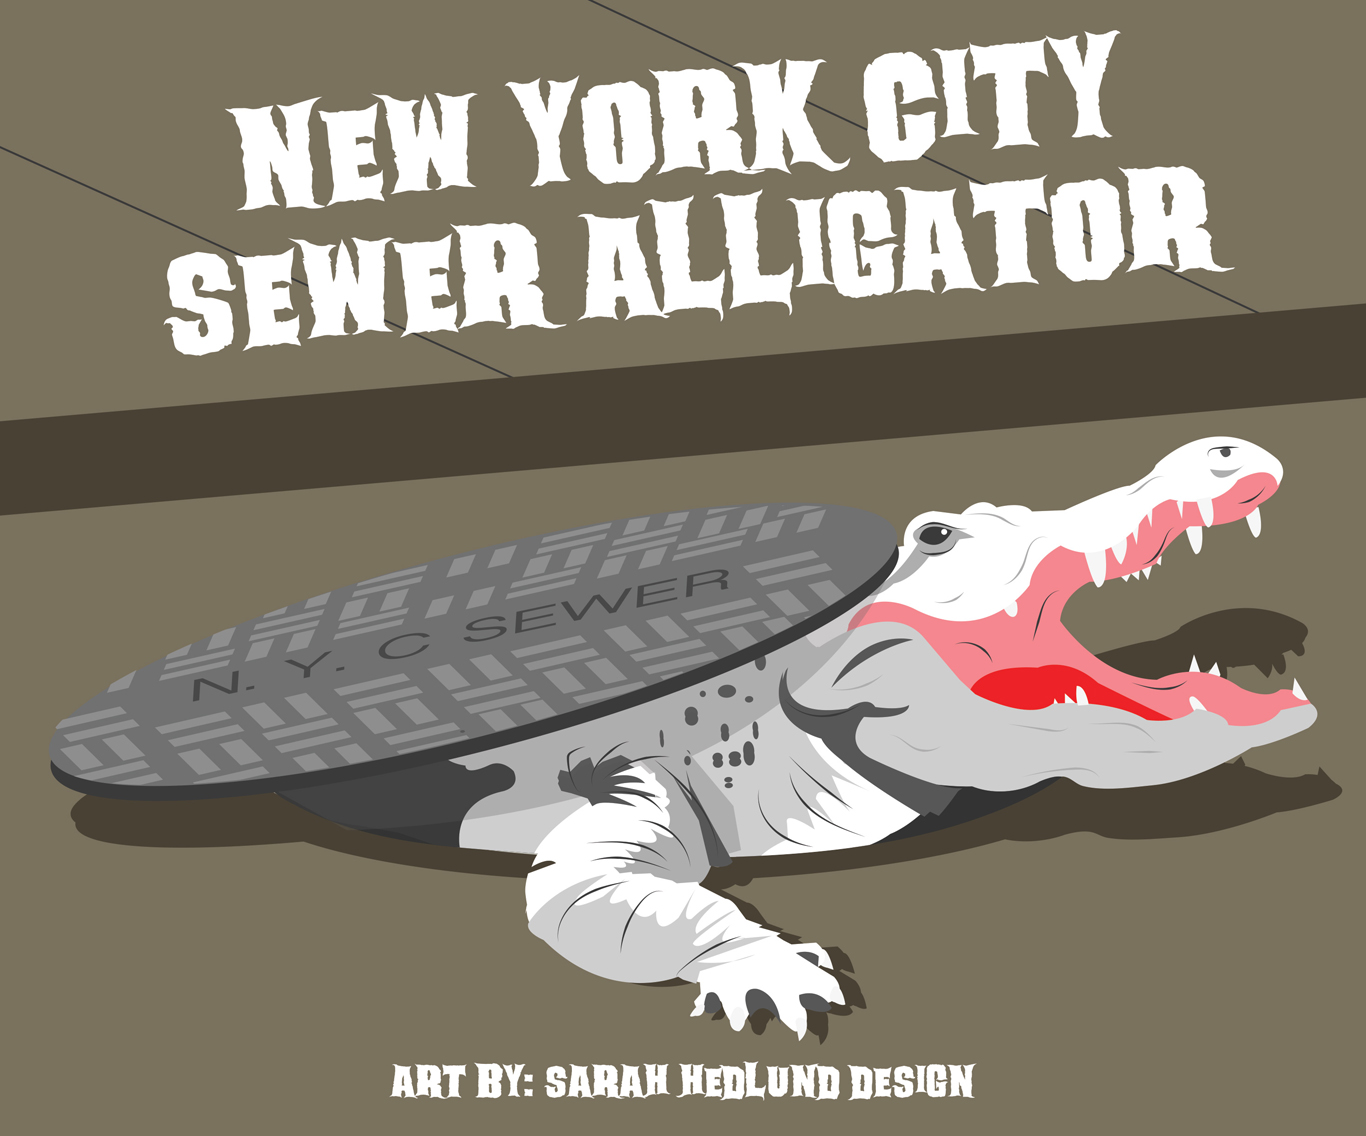 NYC alligator urban legend © Sarah Hedlund Design